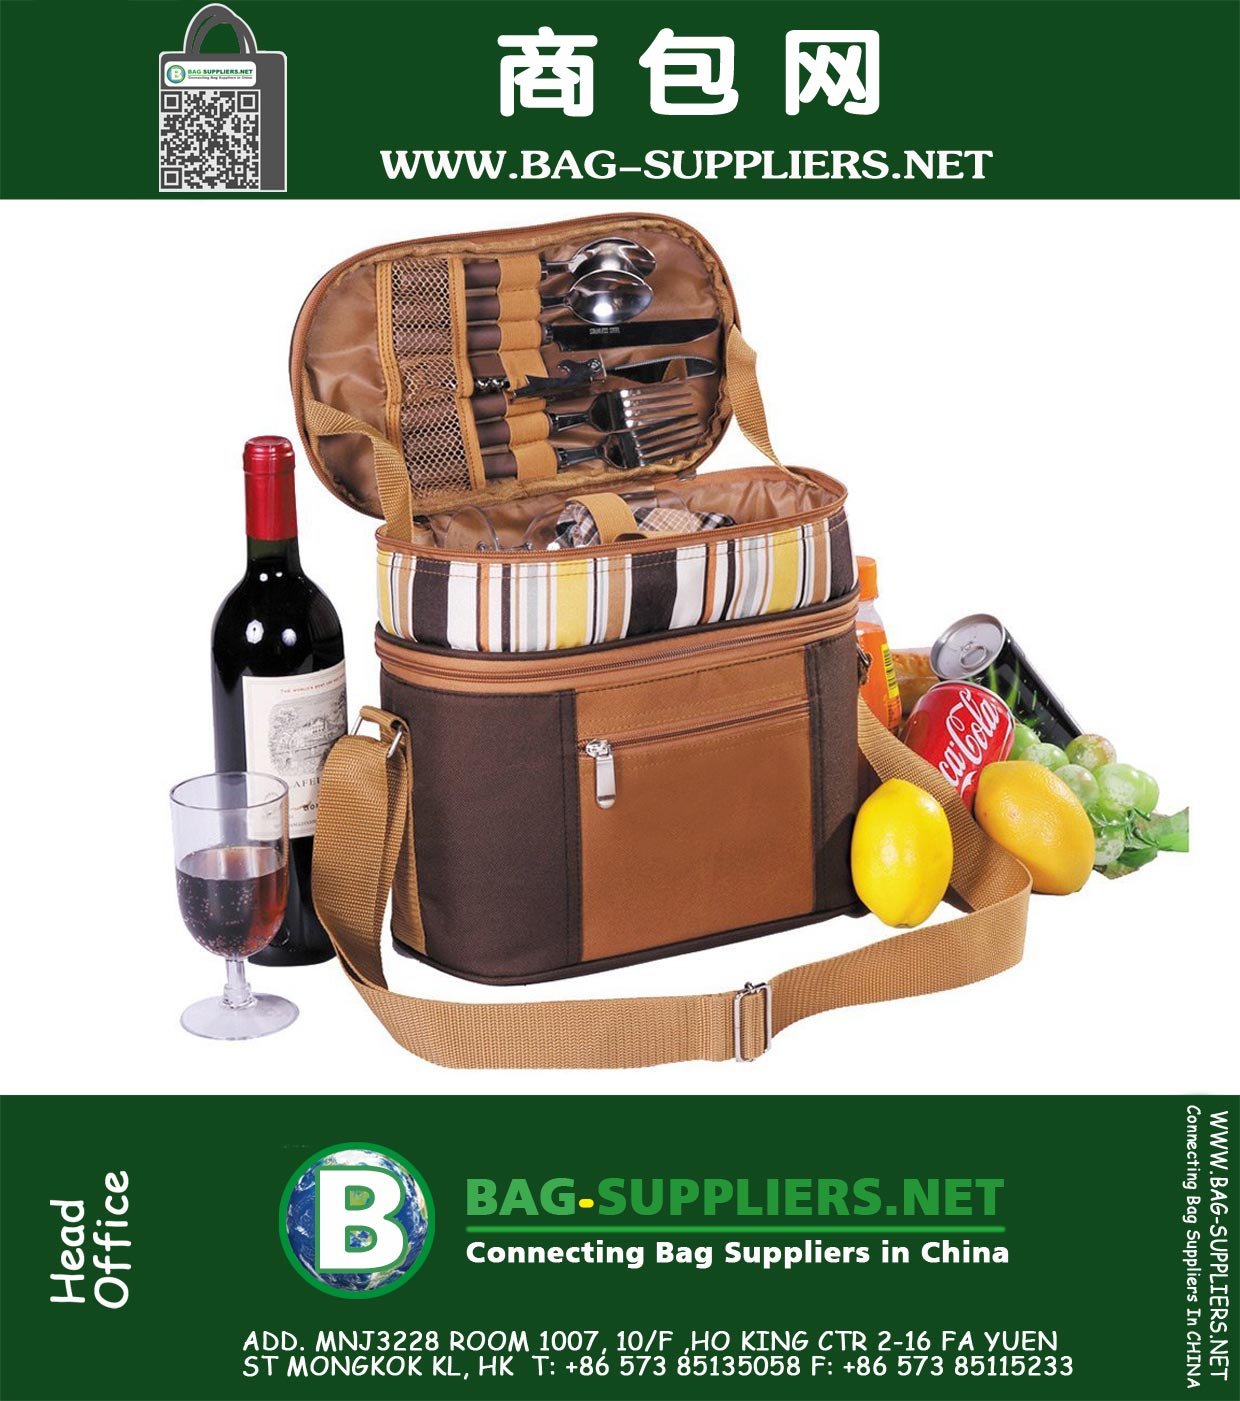 2 Person пикника Рюкзак с Изолированный холодный мешок для хранения продуктов отсеком и столовые приборы, кофе